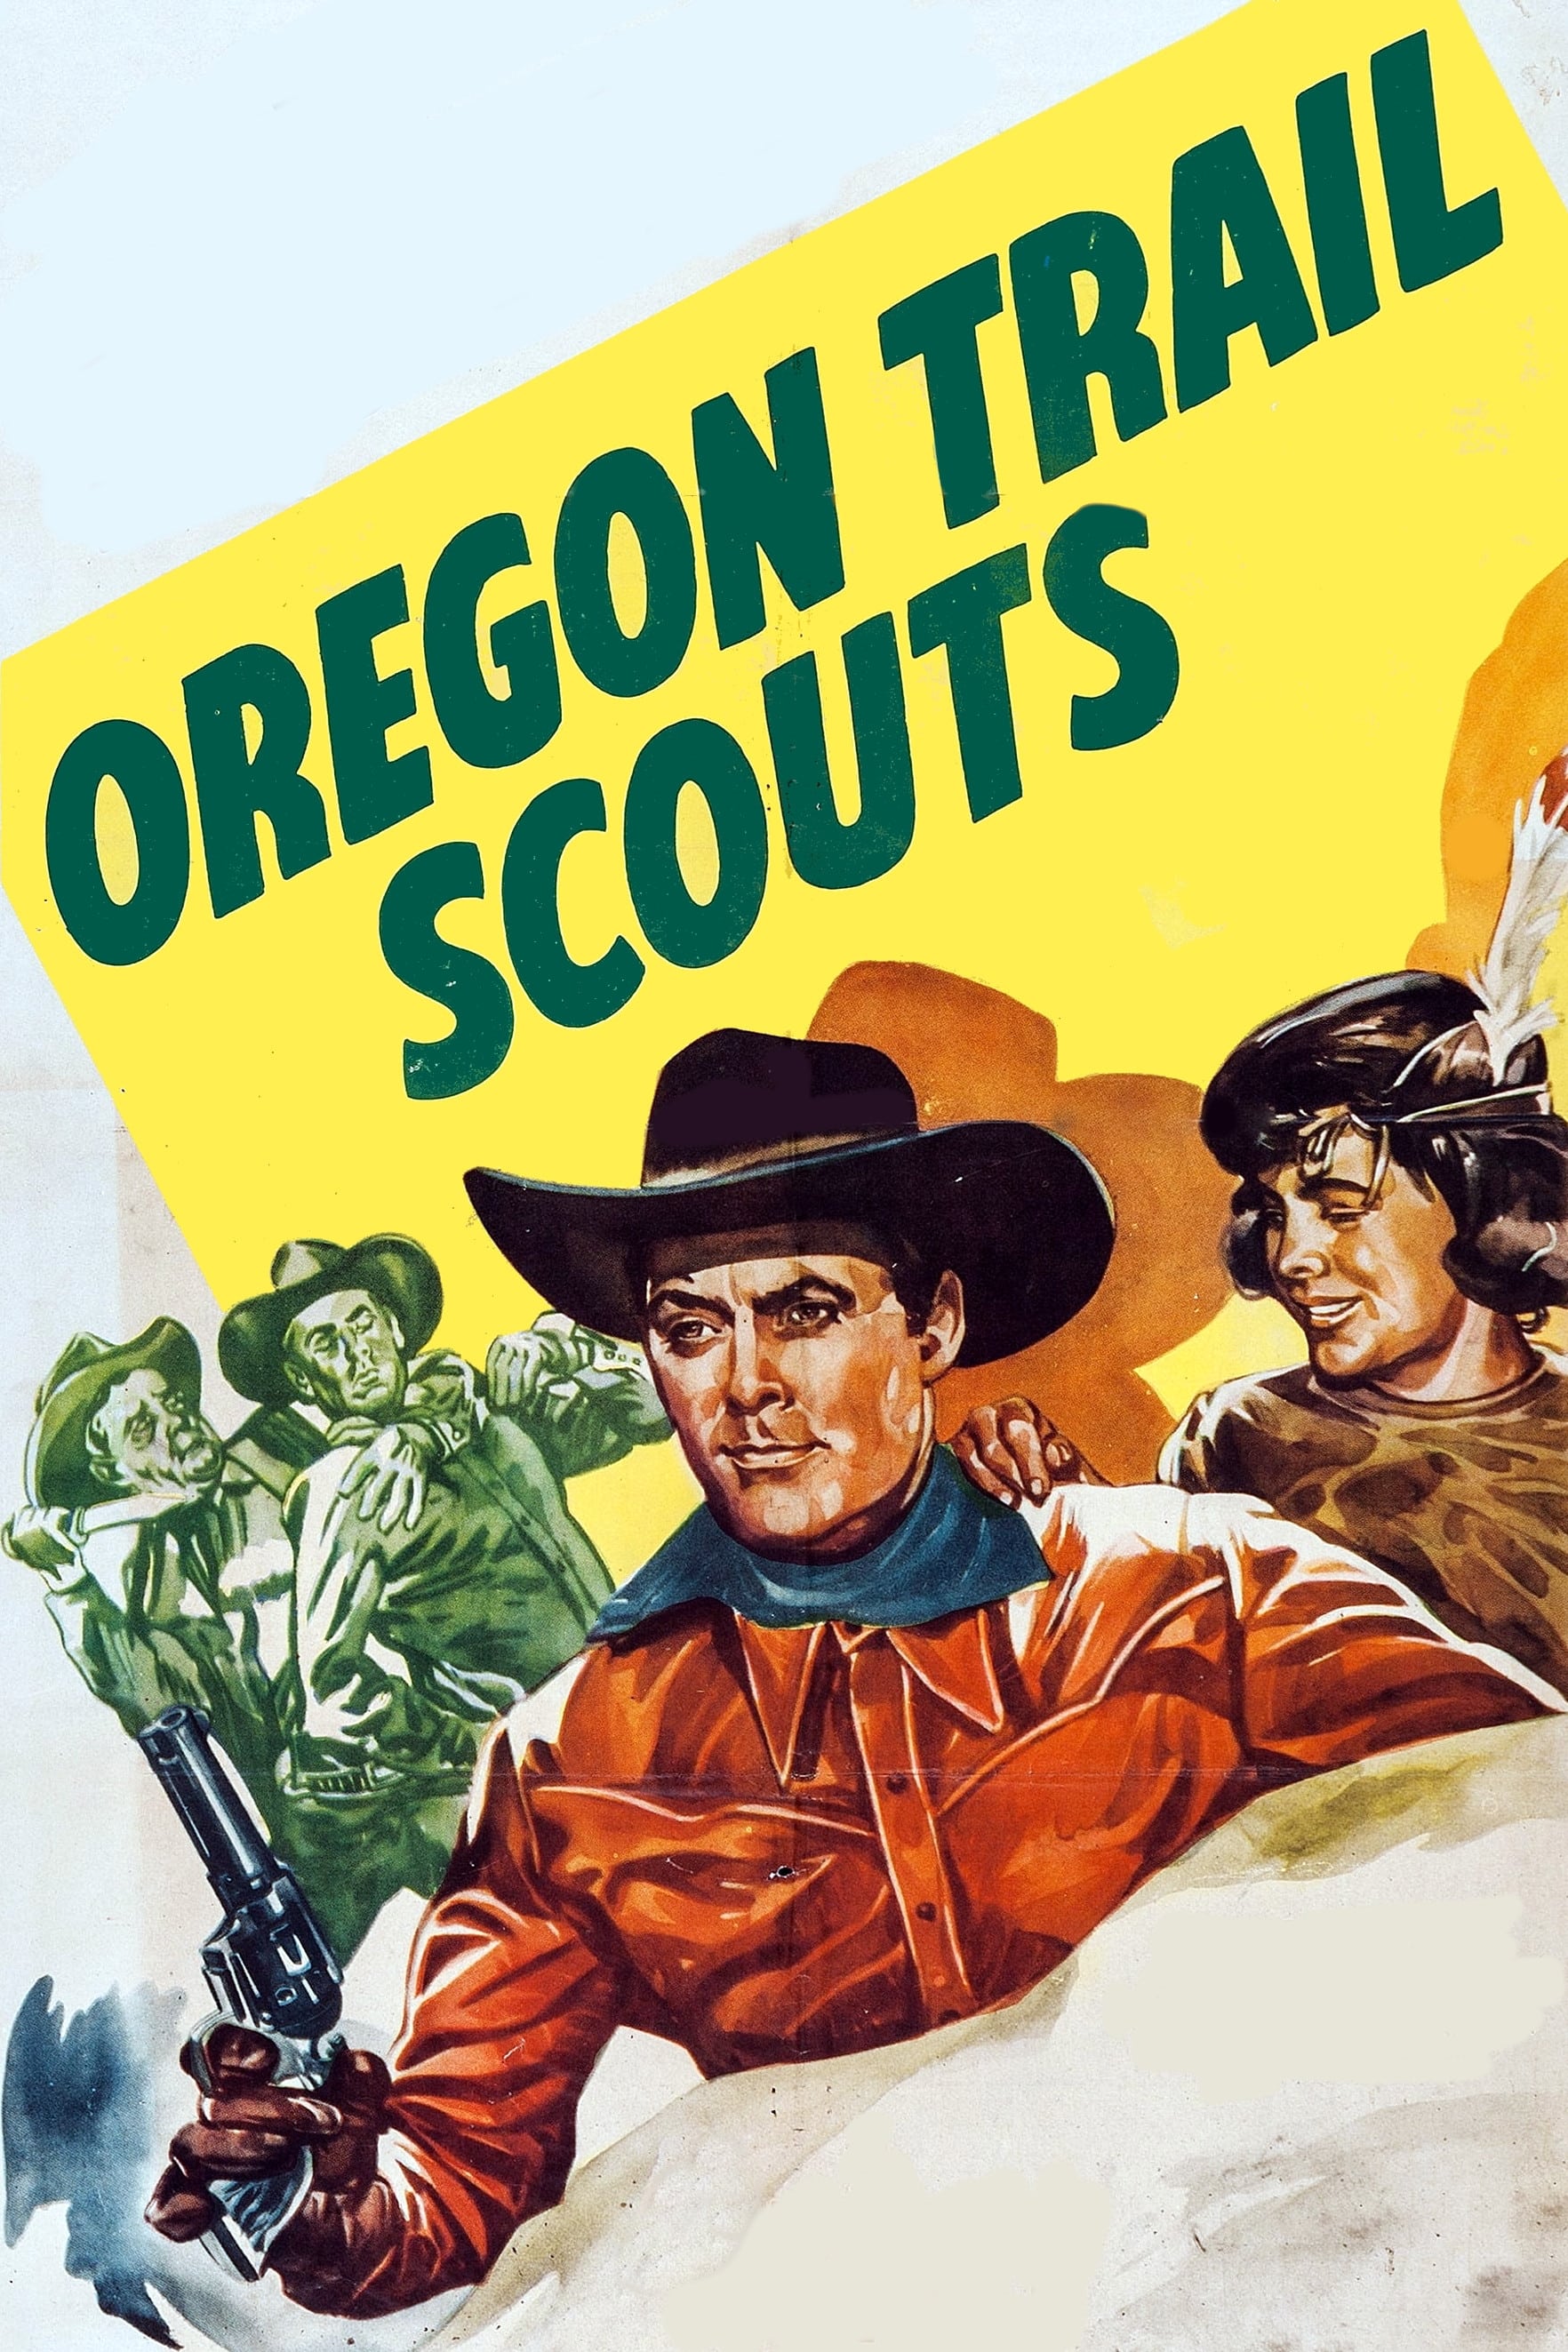 Oregon Trail Scouts (1947)